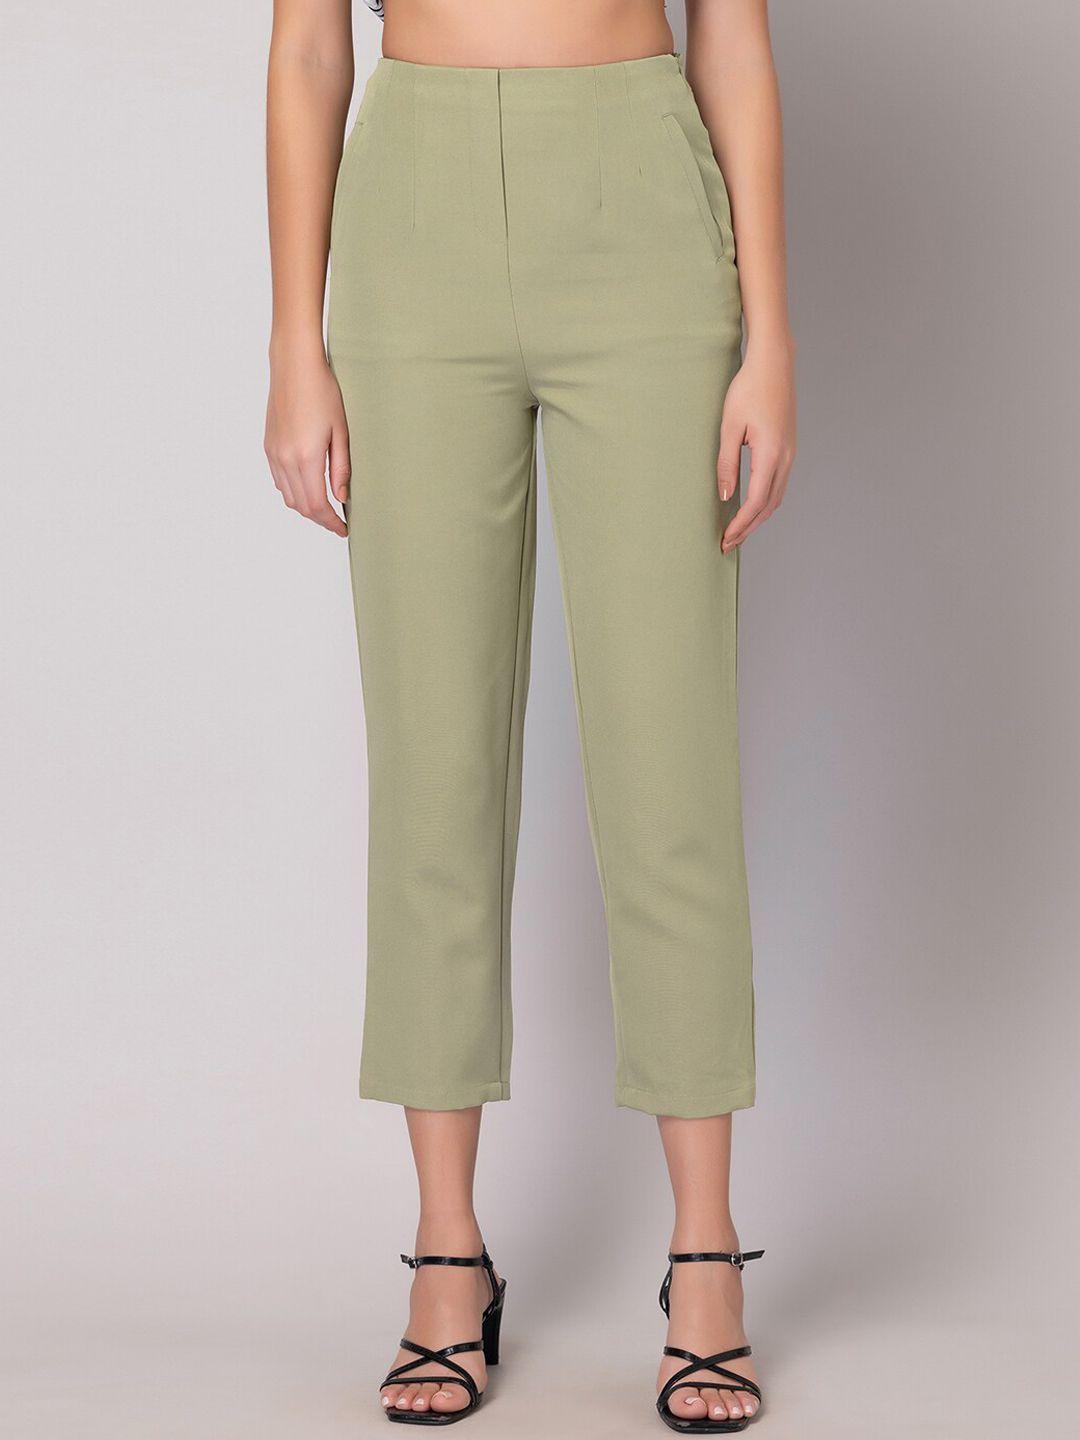 faballey women green high waist cropped trousers